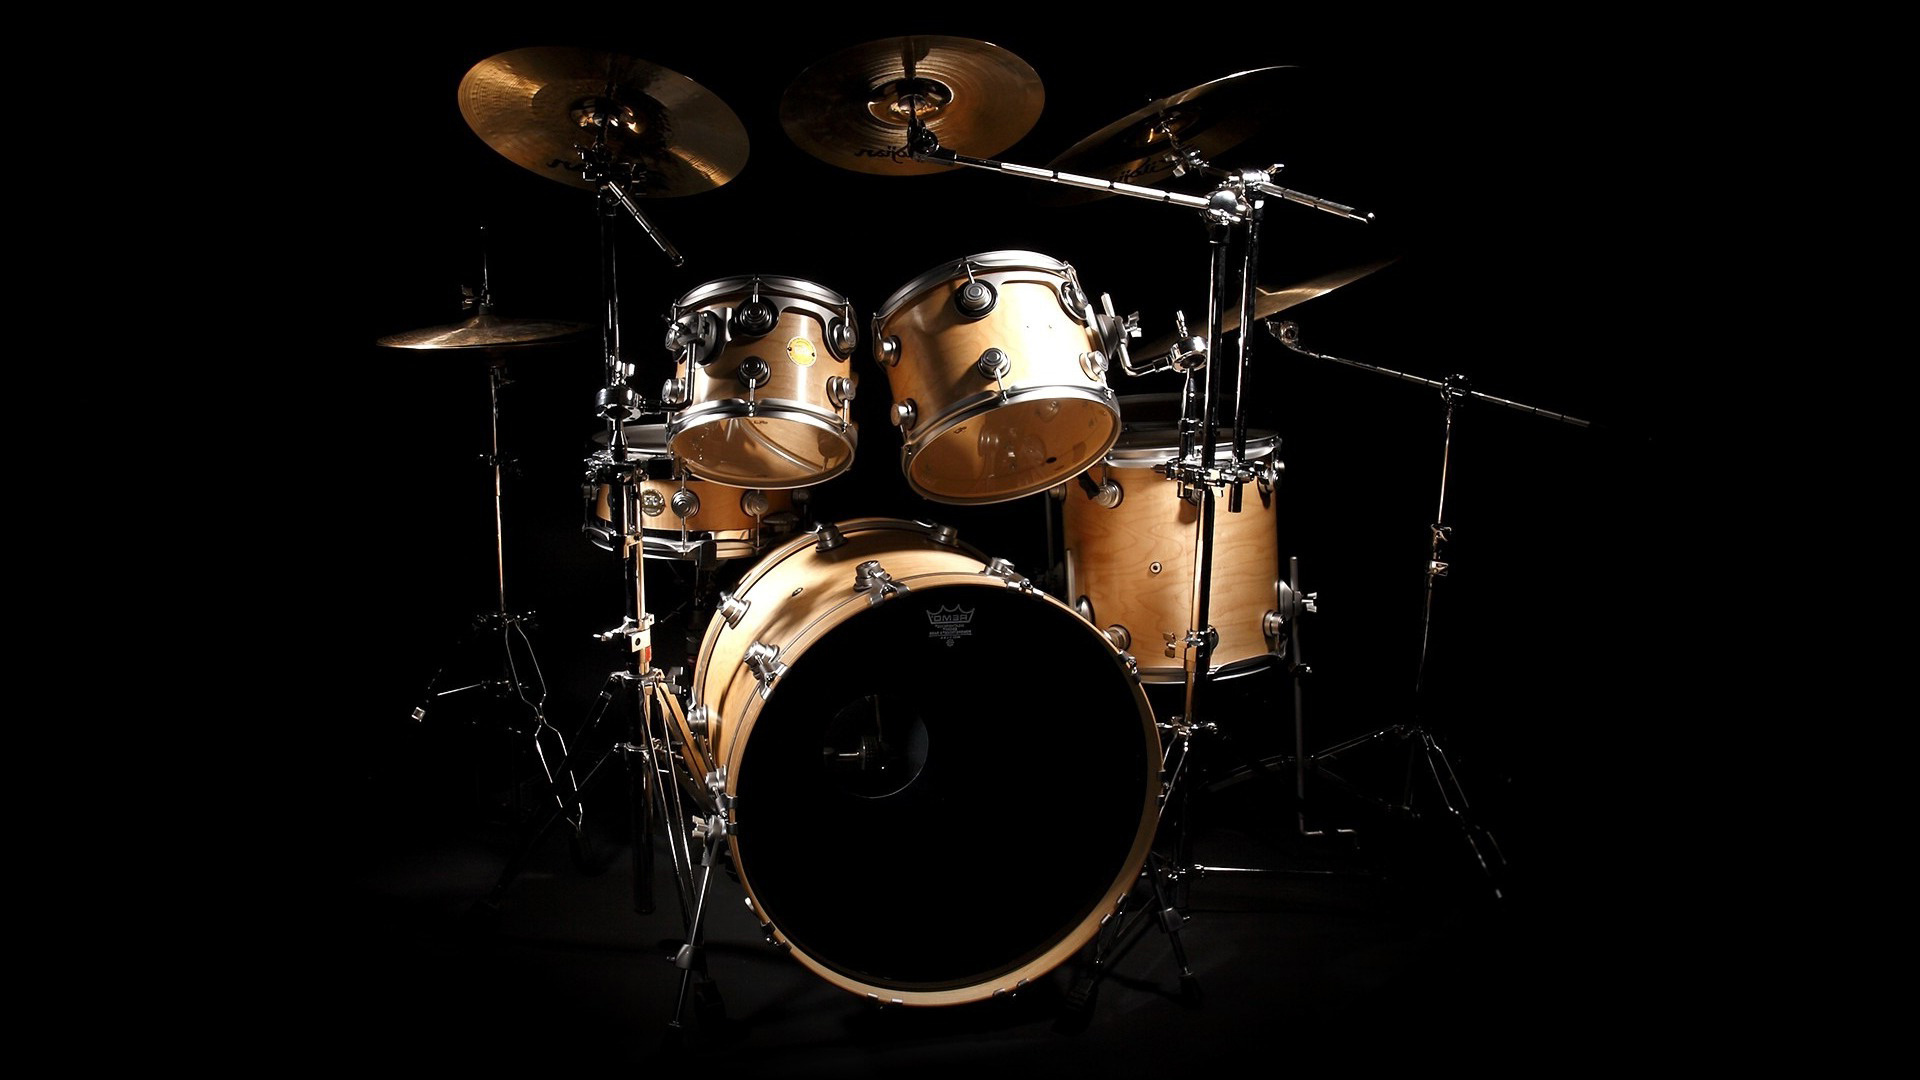 Drummer Wallpaper Black And White Drum kit